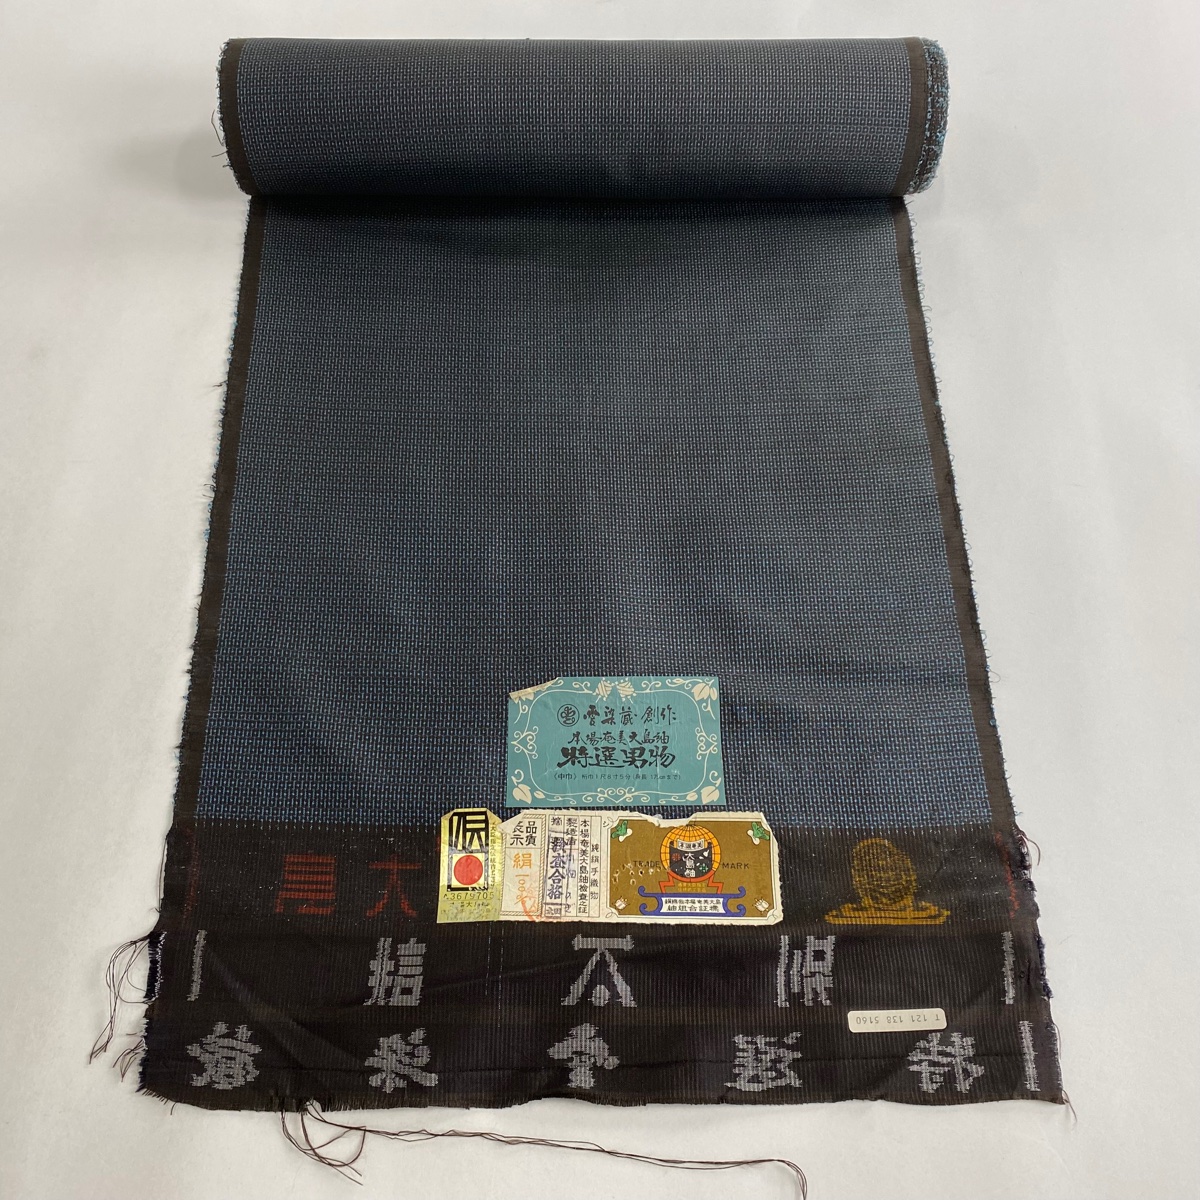  ткань превосходящий товар мужчина кимоно Ooshima эпонж доказательство бумага черепаха .. темно-синий цвет натуральный шелк б/у 